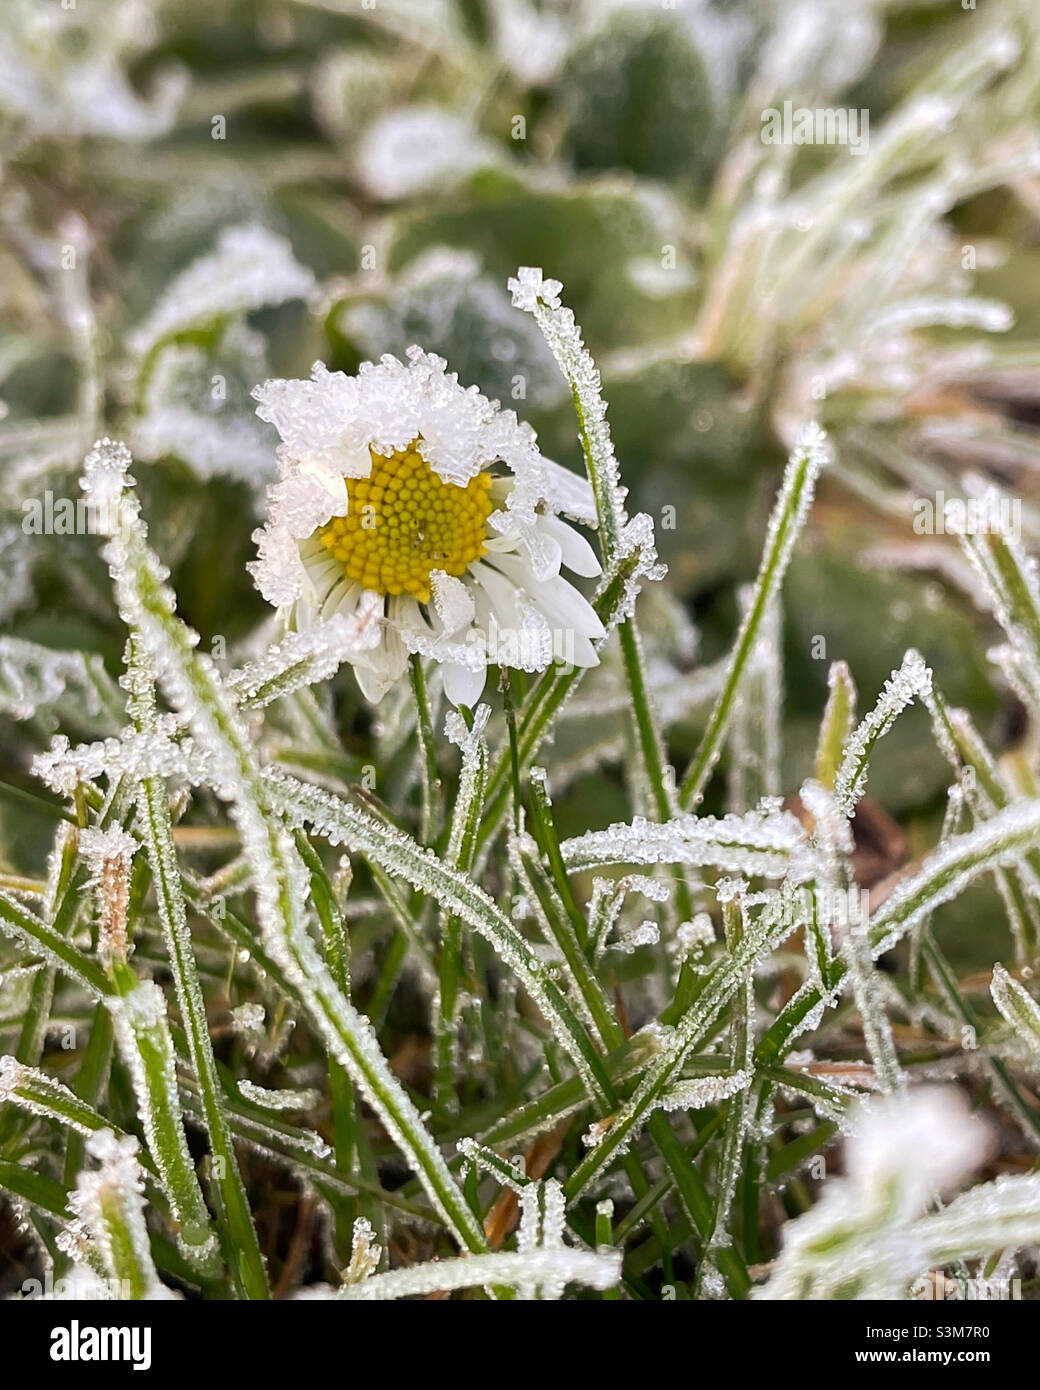 The frozen Daisy. Stock Photo